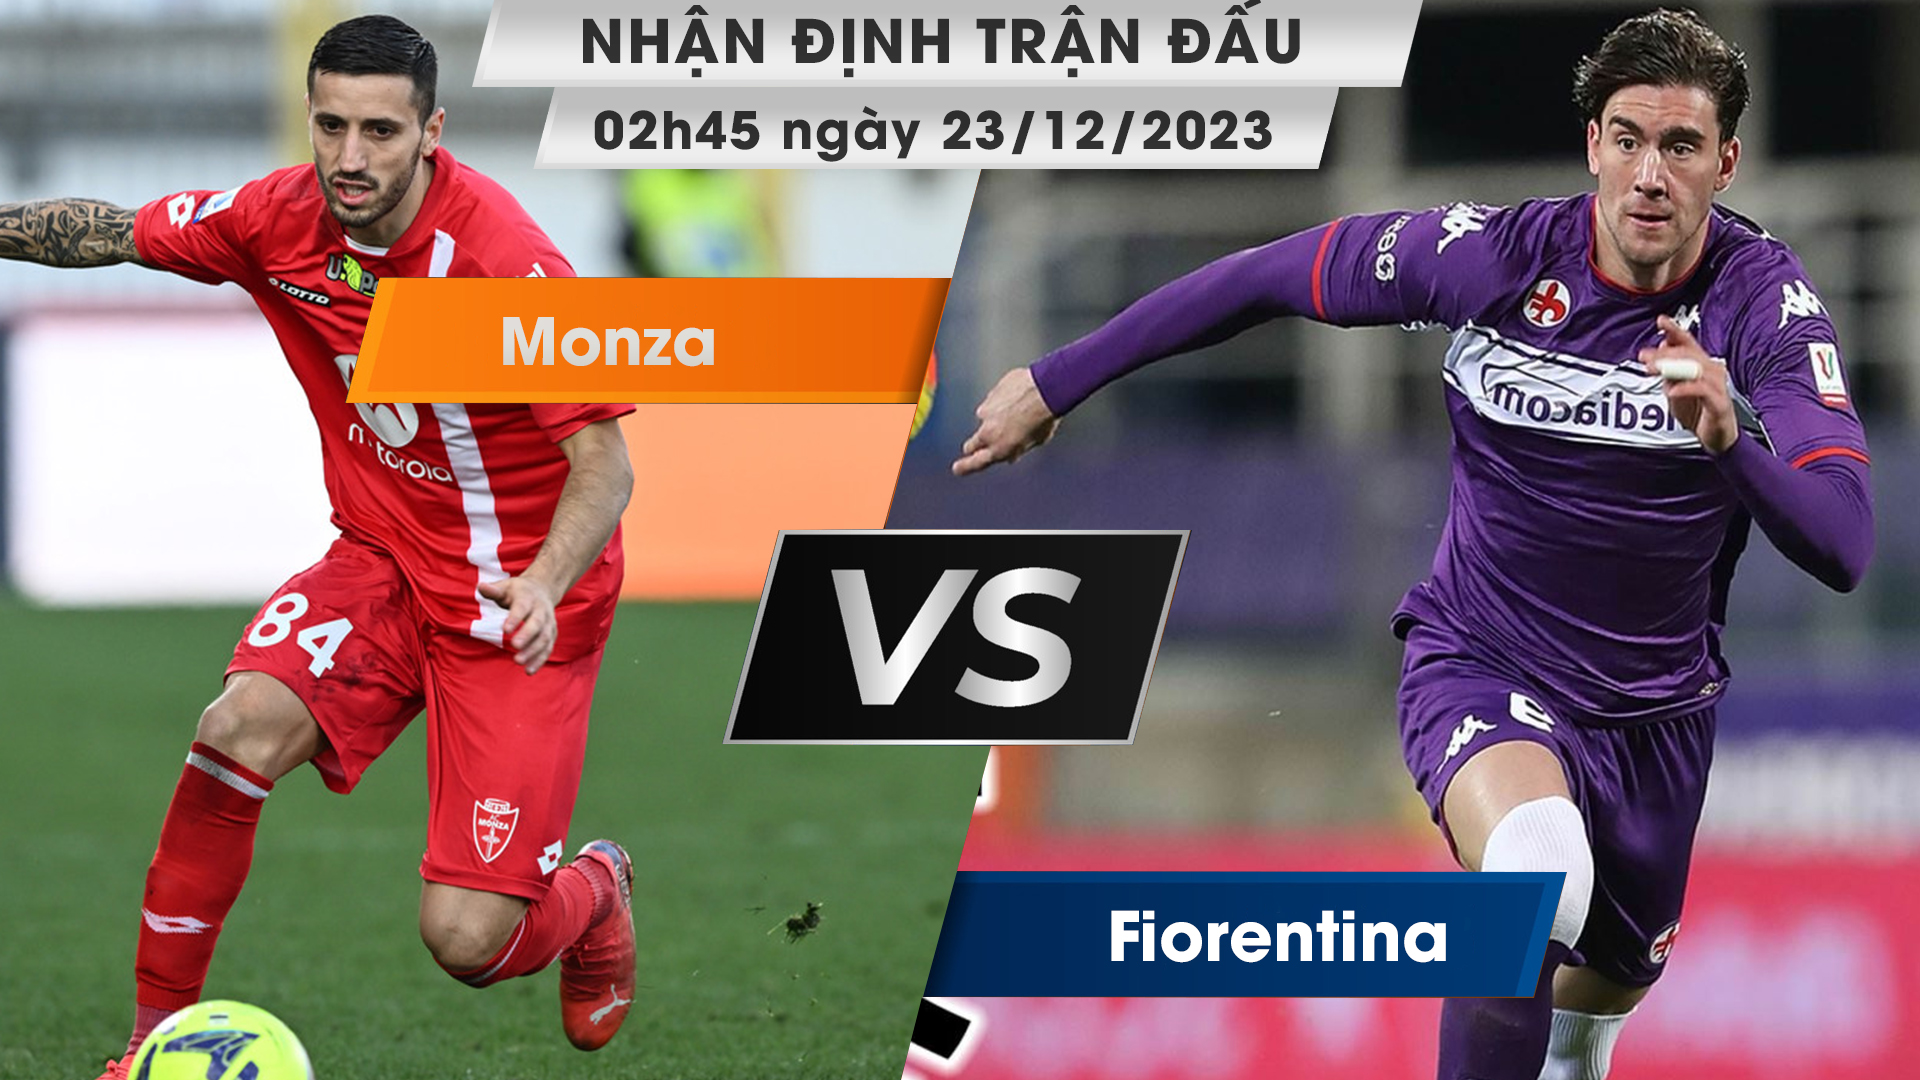 Nhận định, dự đoán Monza vs Fiorentina, 02h45 ngày 23/12/2023